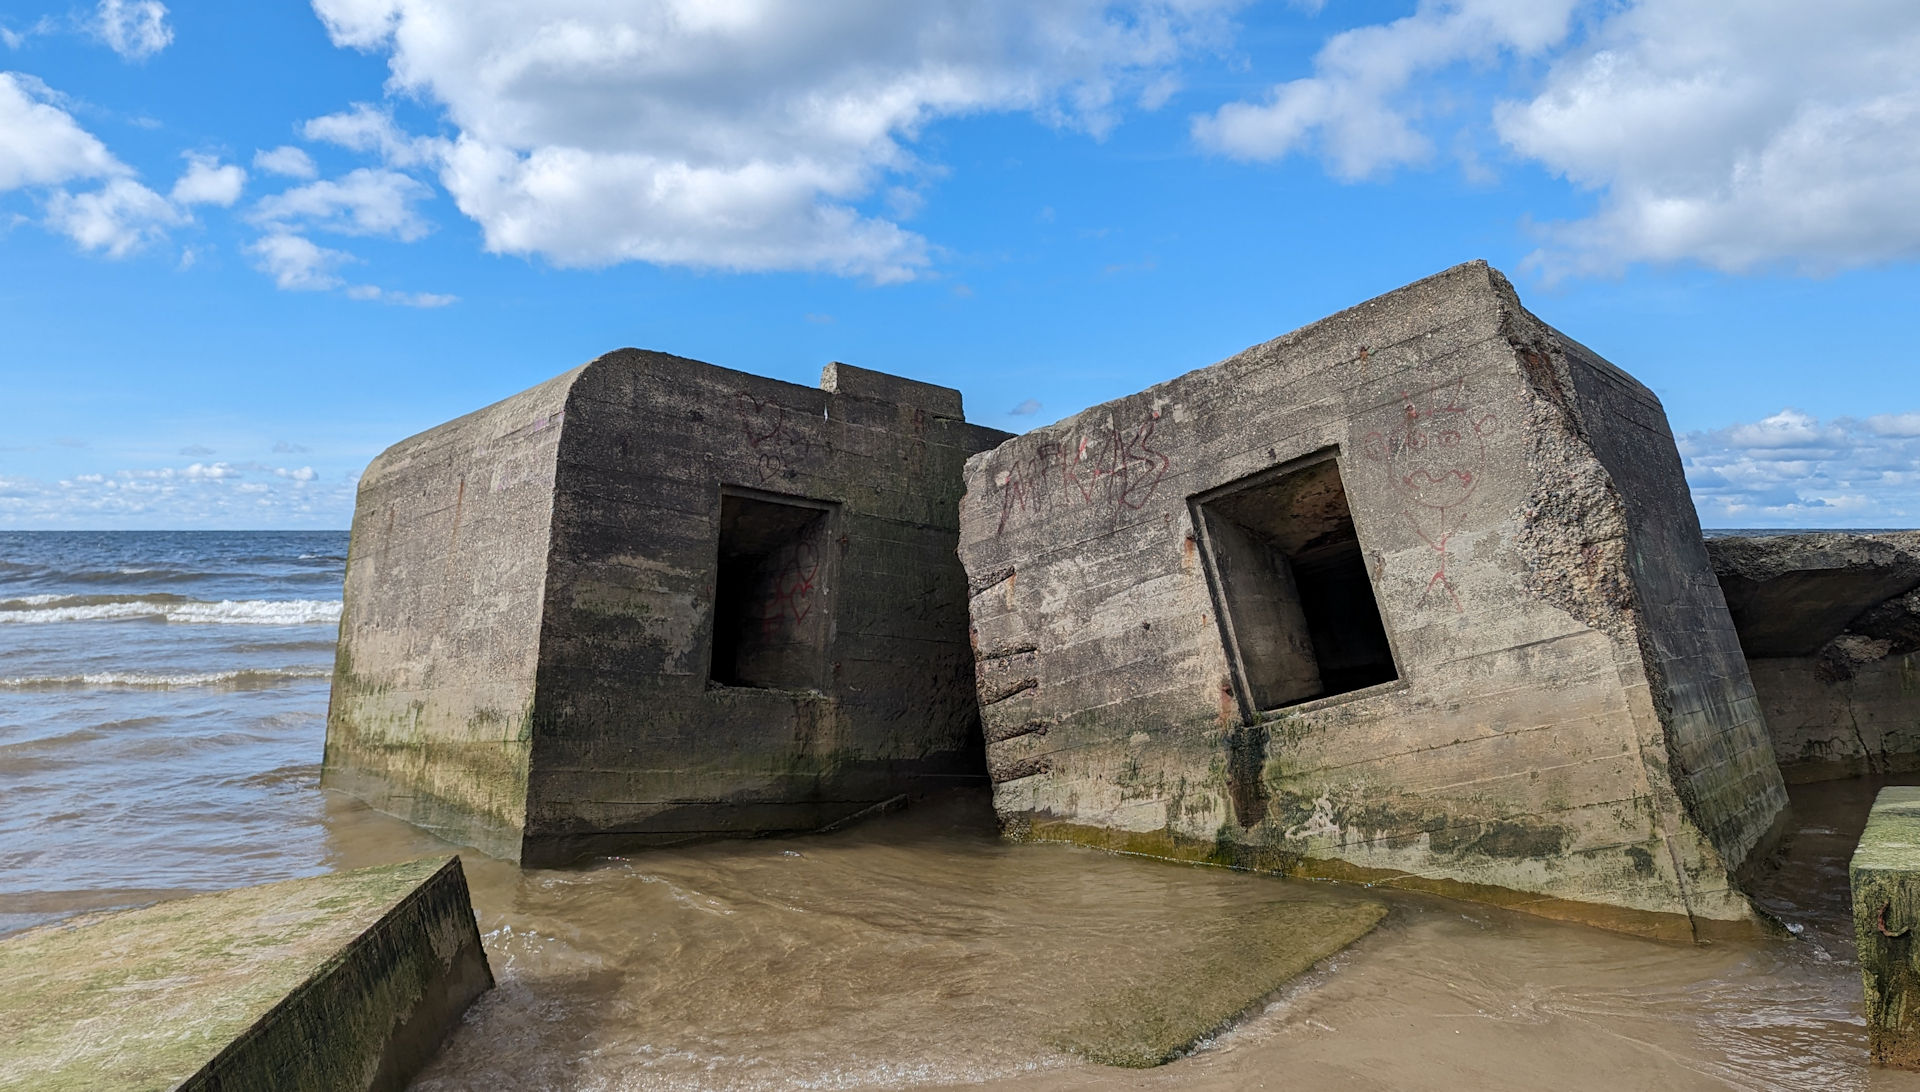 Zwei Bunker stehen halb im Meer und sind im Sand versunken